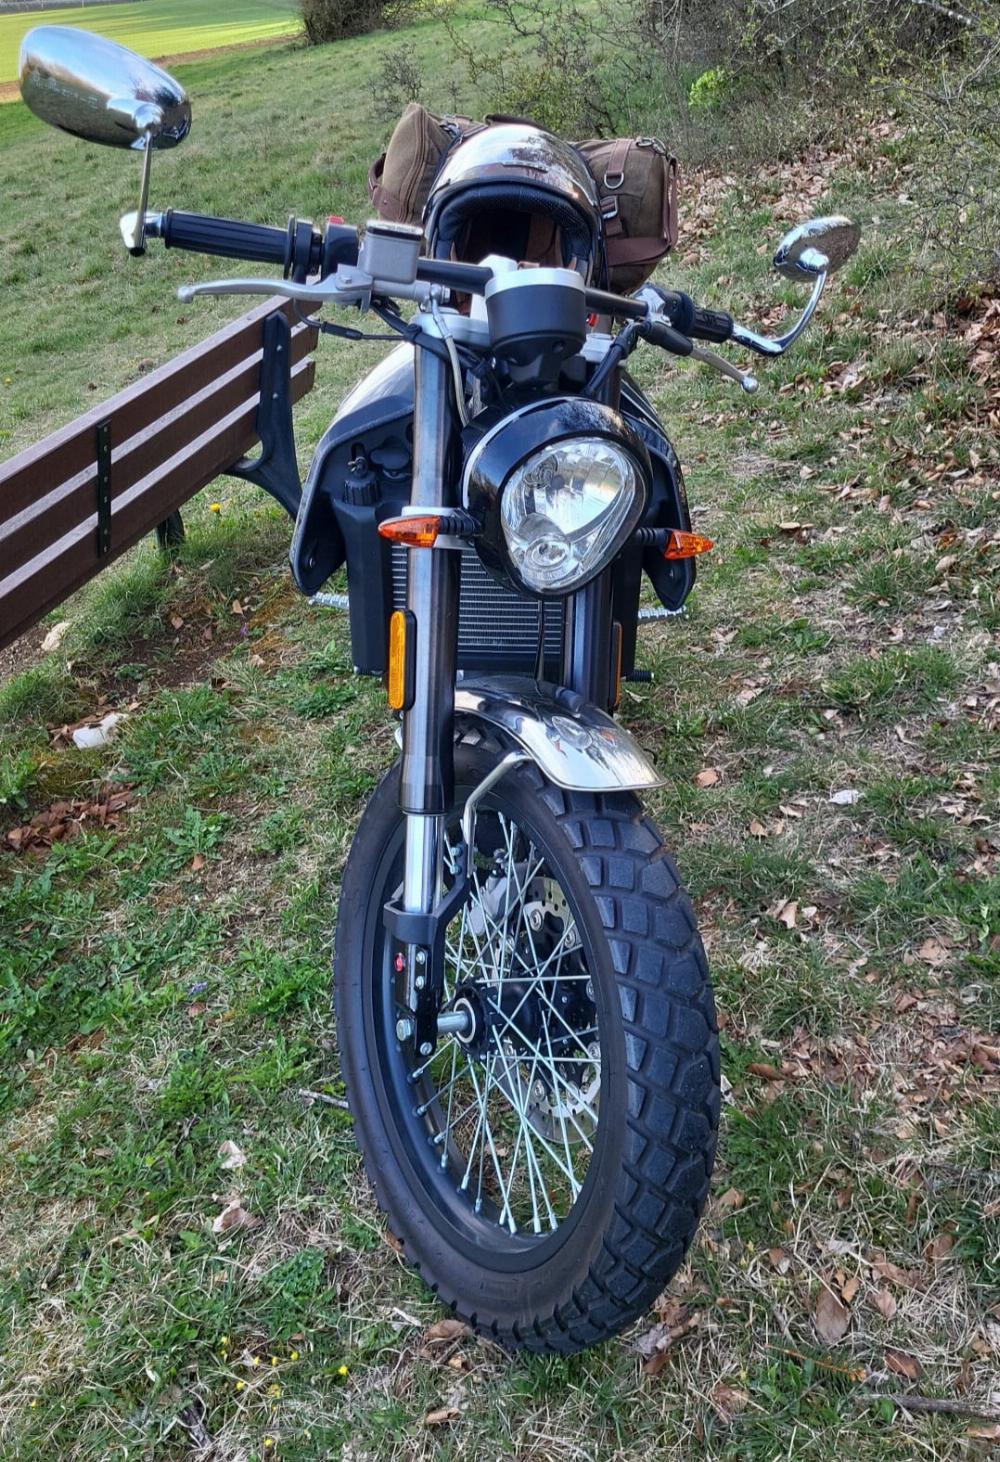 Motorrad verkaufen FB Mondial HPS 300i Ankauf